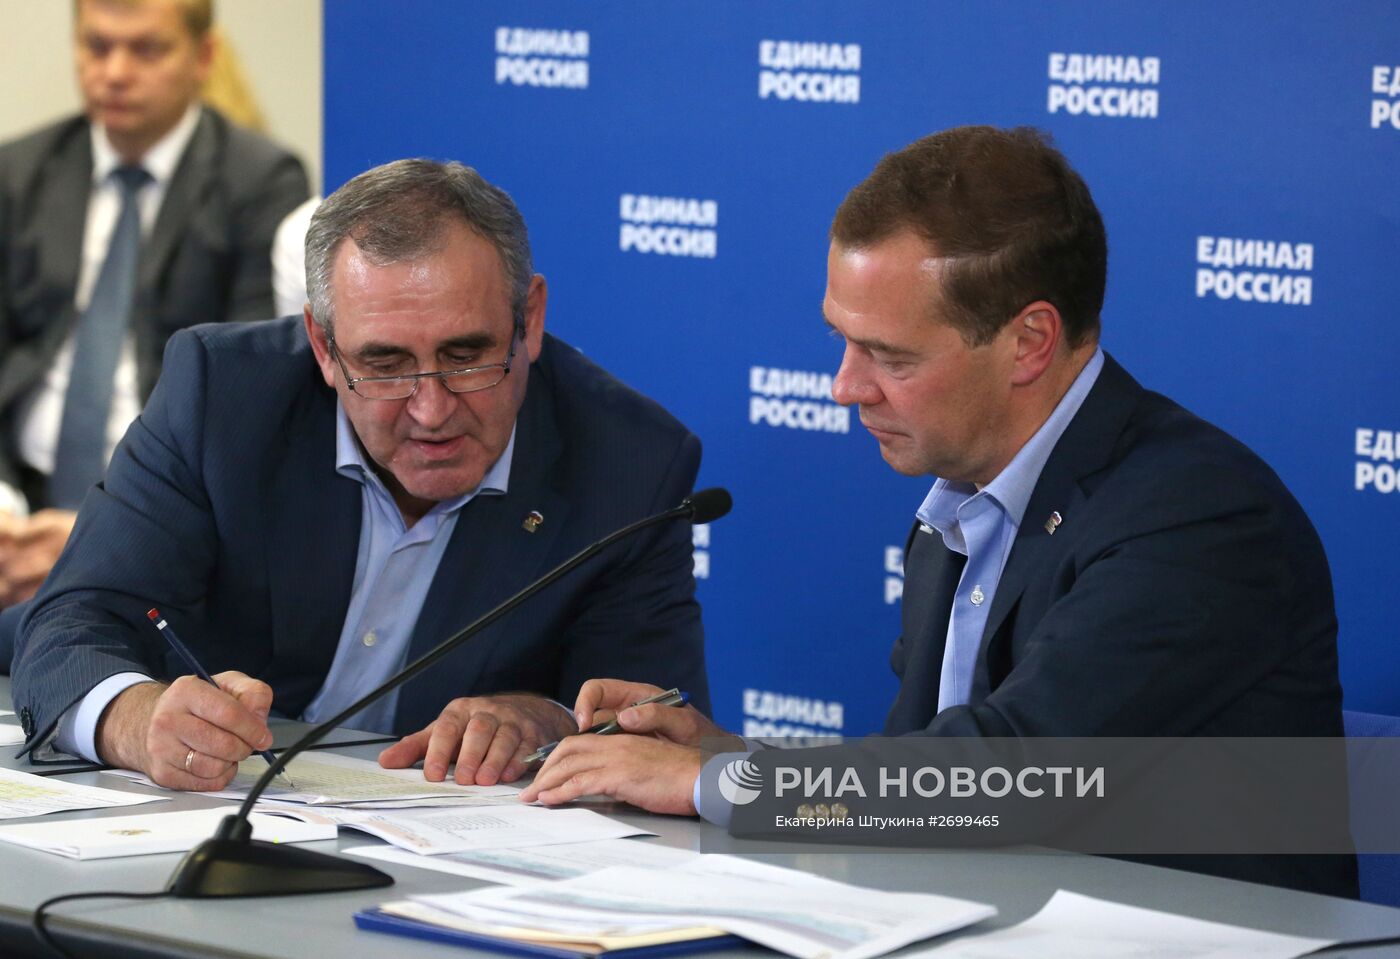 Дмитрий Медведев провёл видеоконференцию с представителями партии "Единая Россия" в регионах РФ, в которых прошли выборы